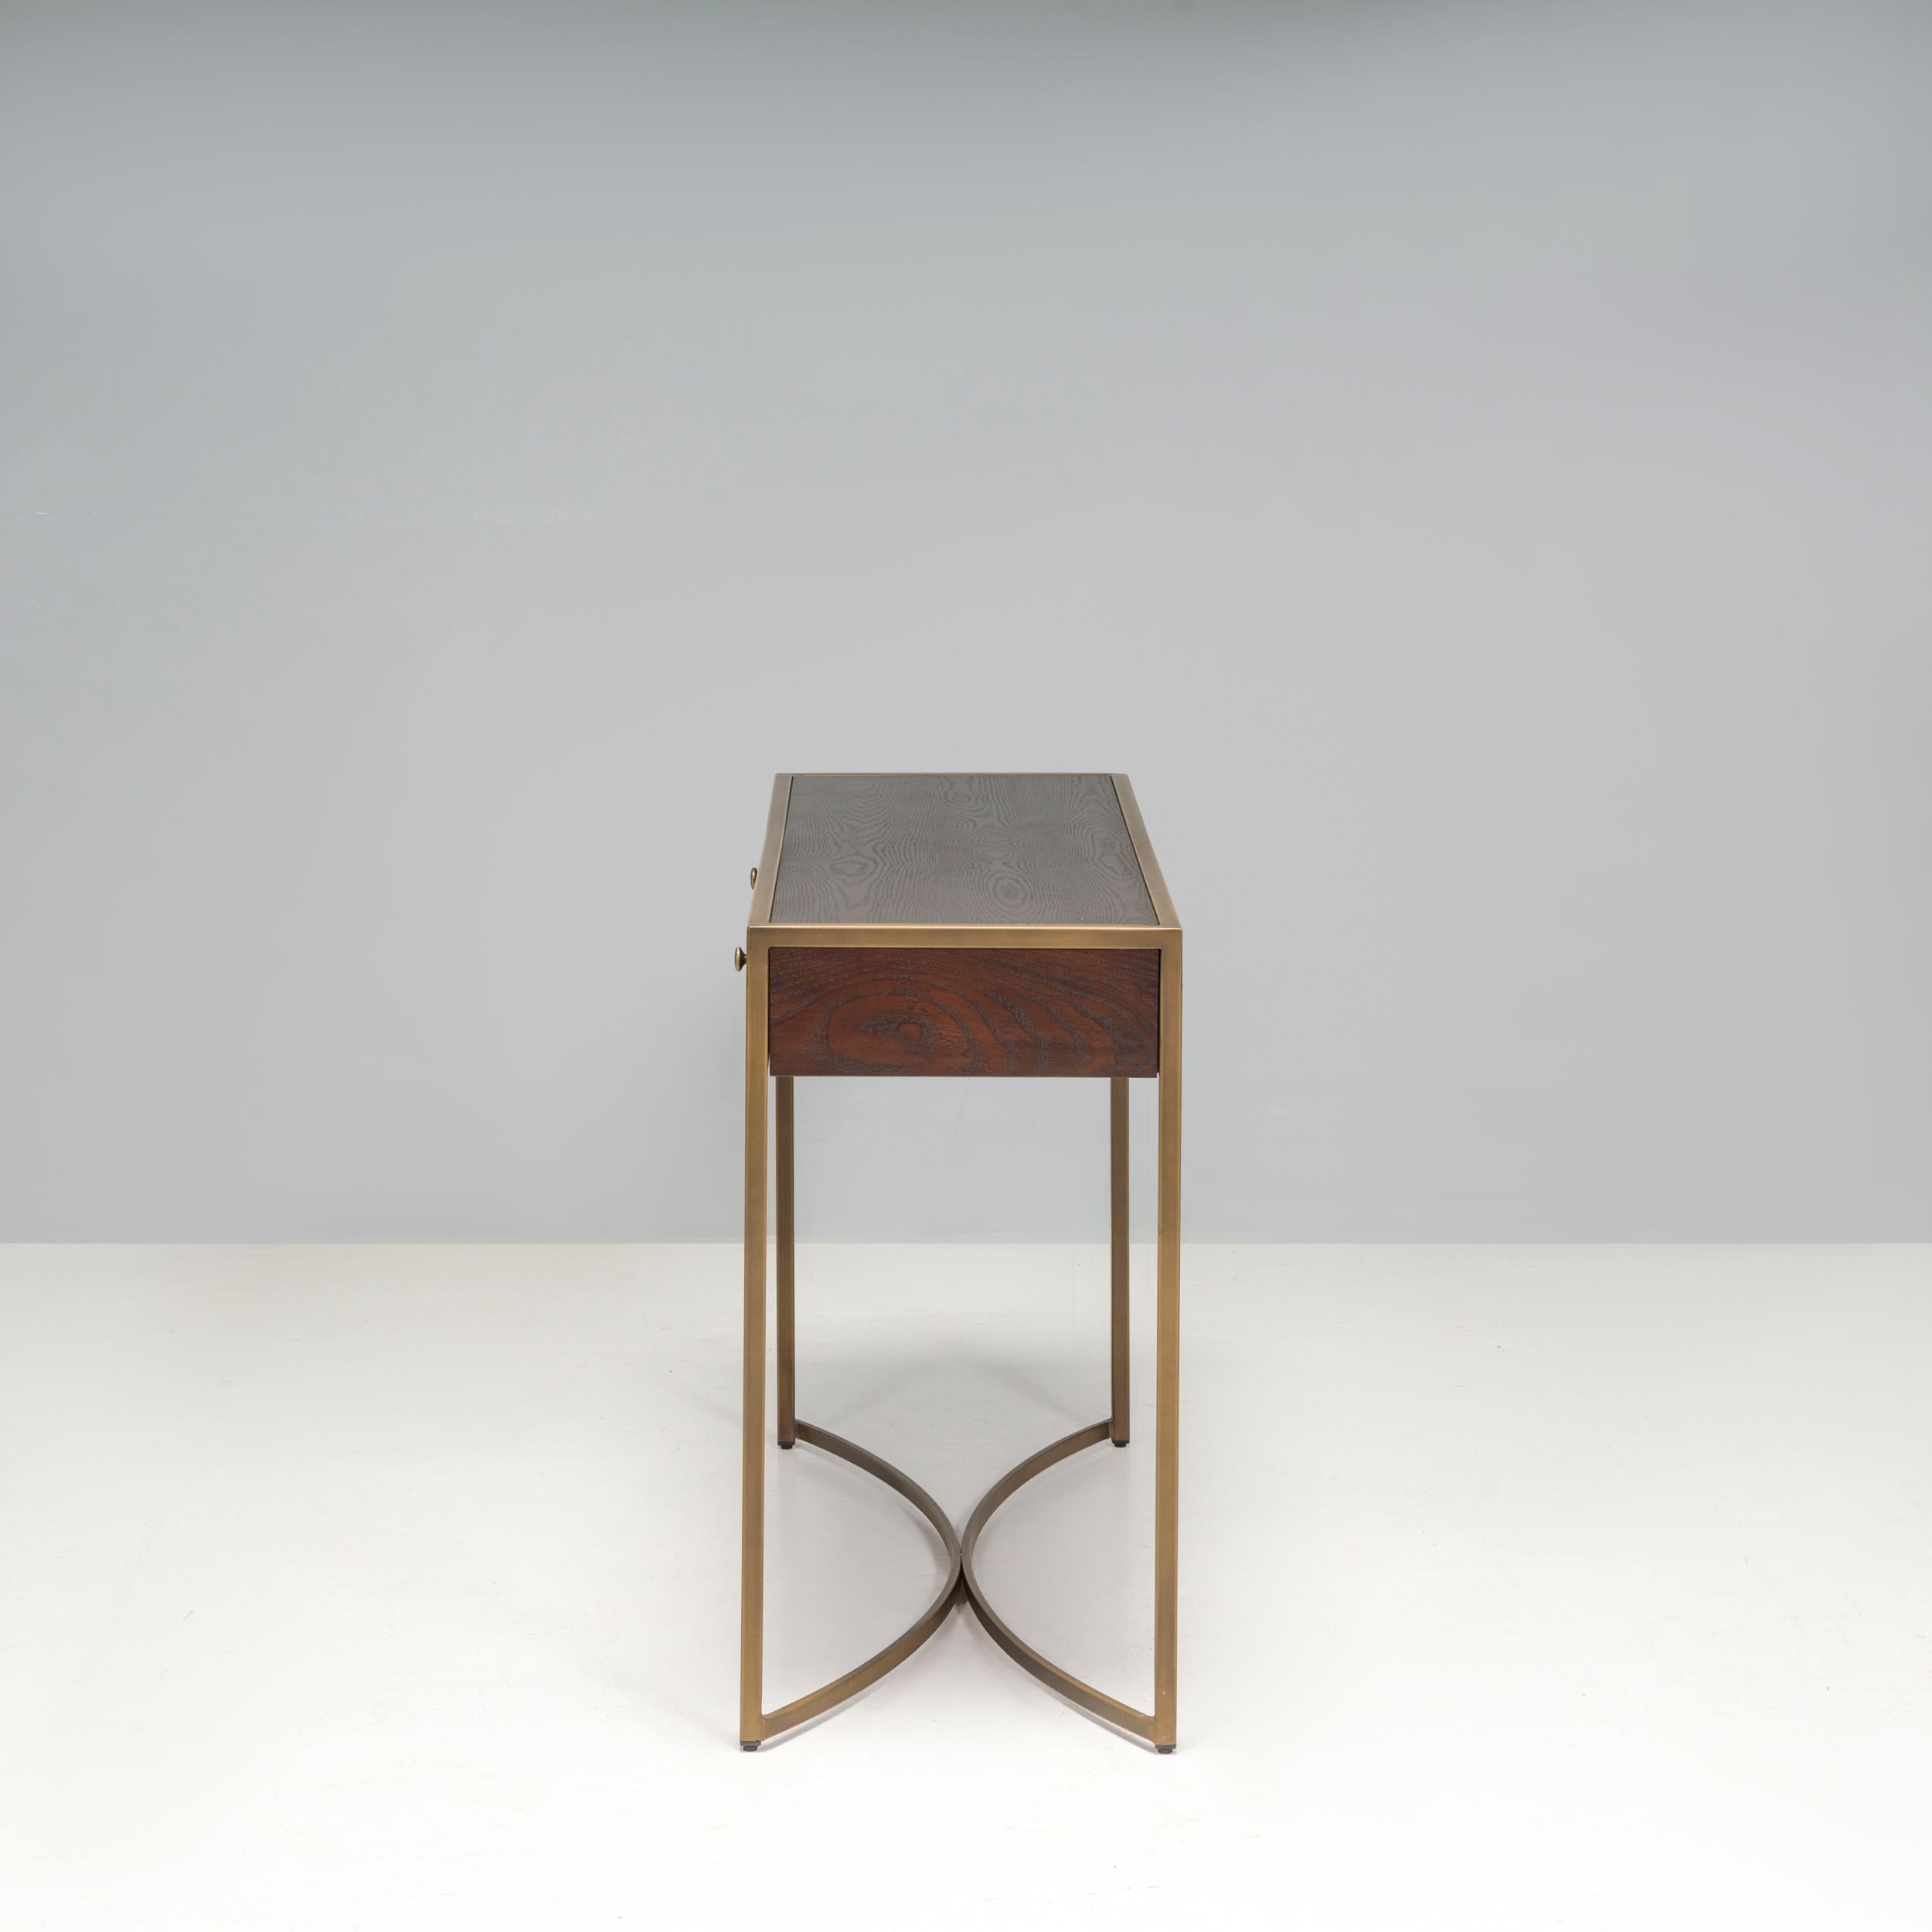 Das 2011 gegründete Unternehmen Liang & Eimil entwirft zeitlose Möbel, bei denen hochwertige Materialien und Nachhaltigkeit im Vordergrund stehen. Die Rivoli-Dekoration besteht aus einem braunen Eschenfurnier mit messingfarbenen Metallverzierungen,